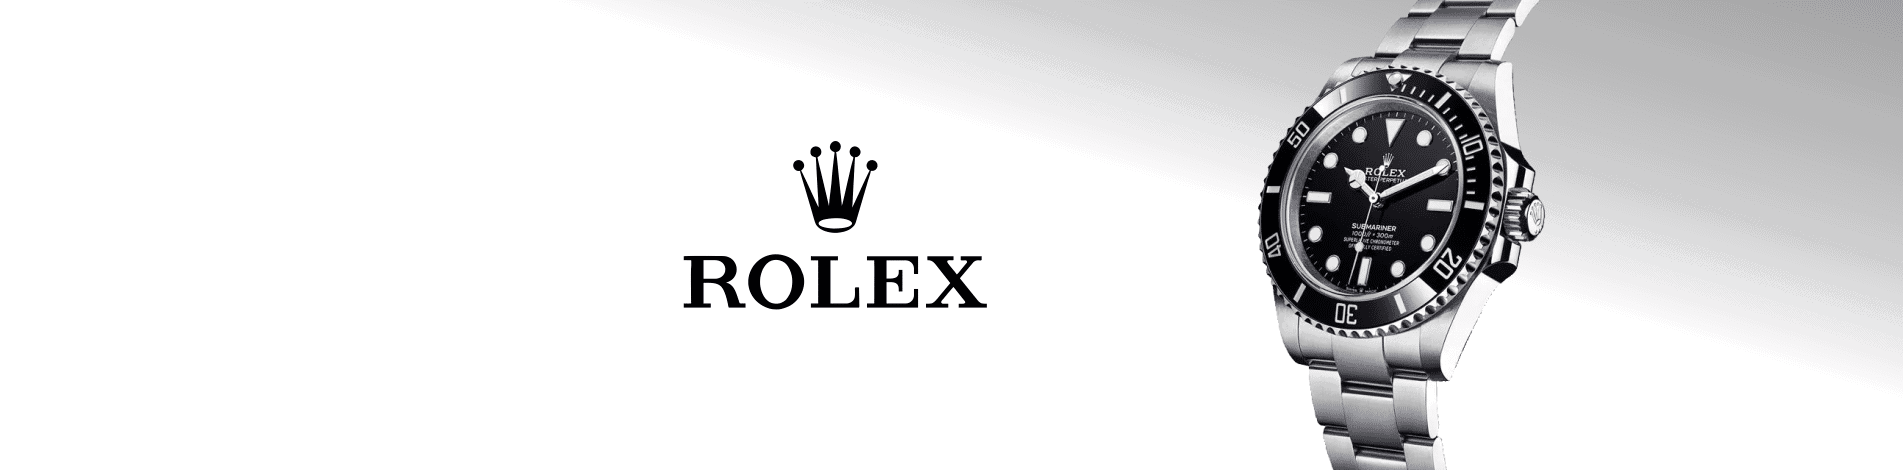 Rolex Winder Category Banner Desktop